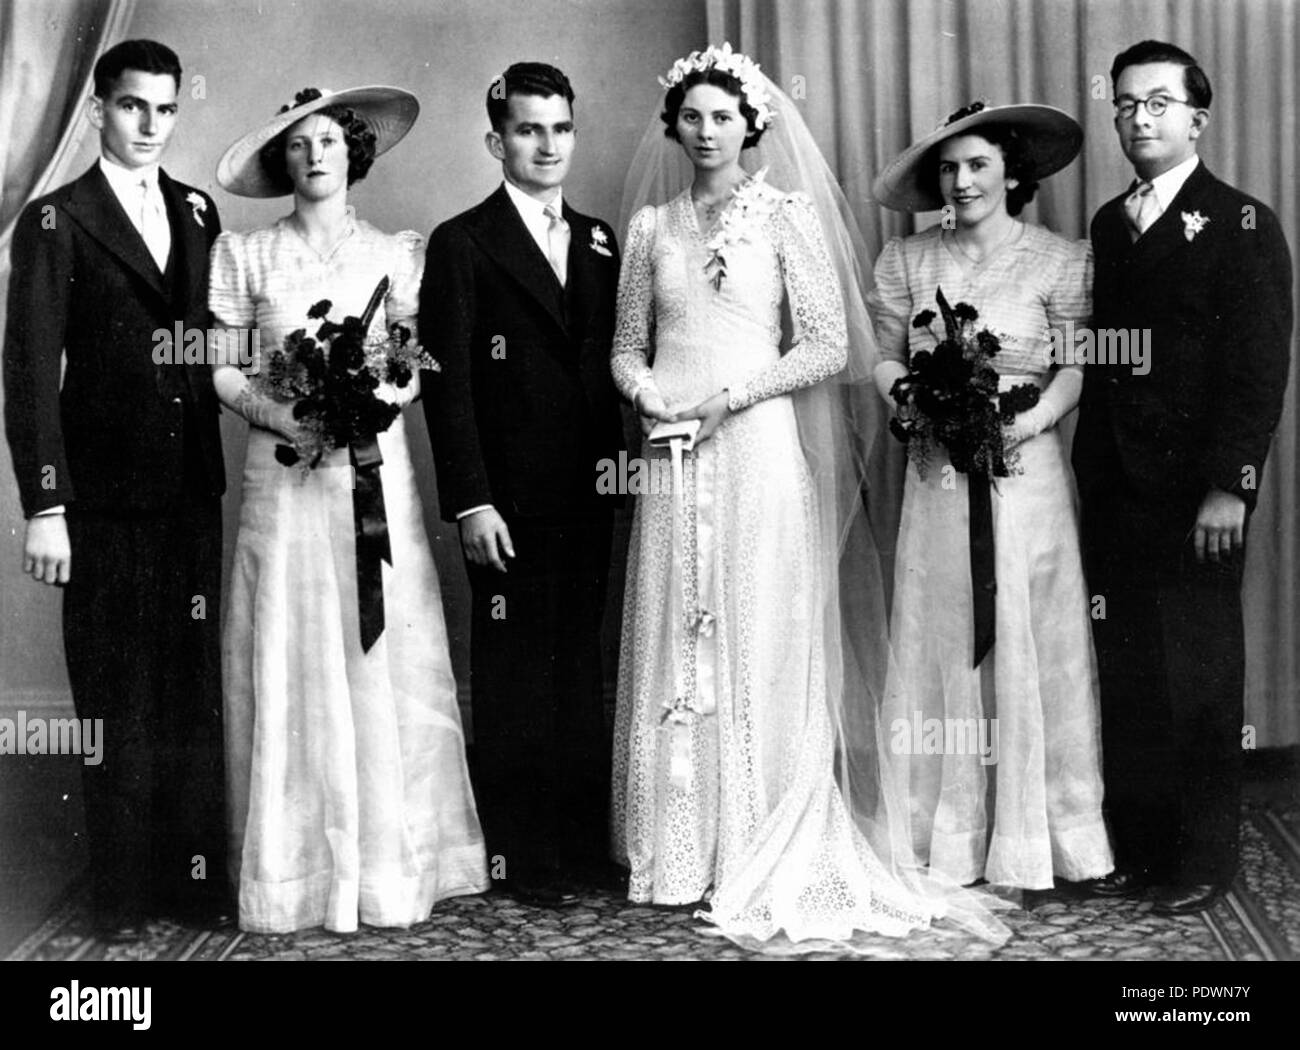 271 StateLibQld 1 70259 Marr matrimonio di famiglia, 1940-1950 Foto Stock